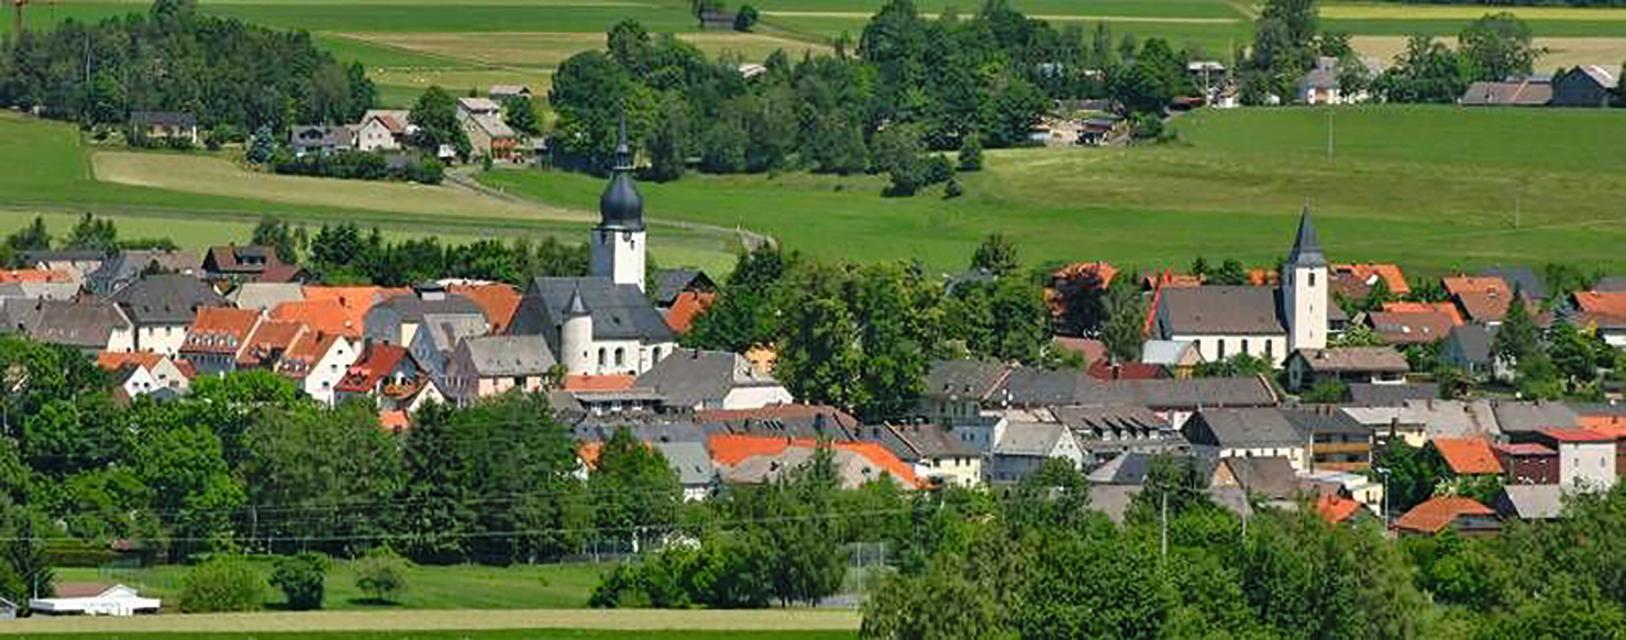 Thiersheim, mit seinen rund 2.000 Einwohnern, wurde 1182 erstmals ­urkundlich erwähnt. Der Ort liegt ­zentral im Landkreis Wunsiedel im Fichtelgebirge und hat einen eigenen Autobahn­anschluss.